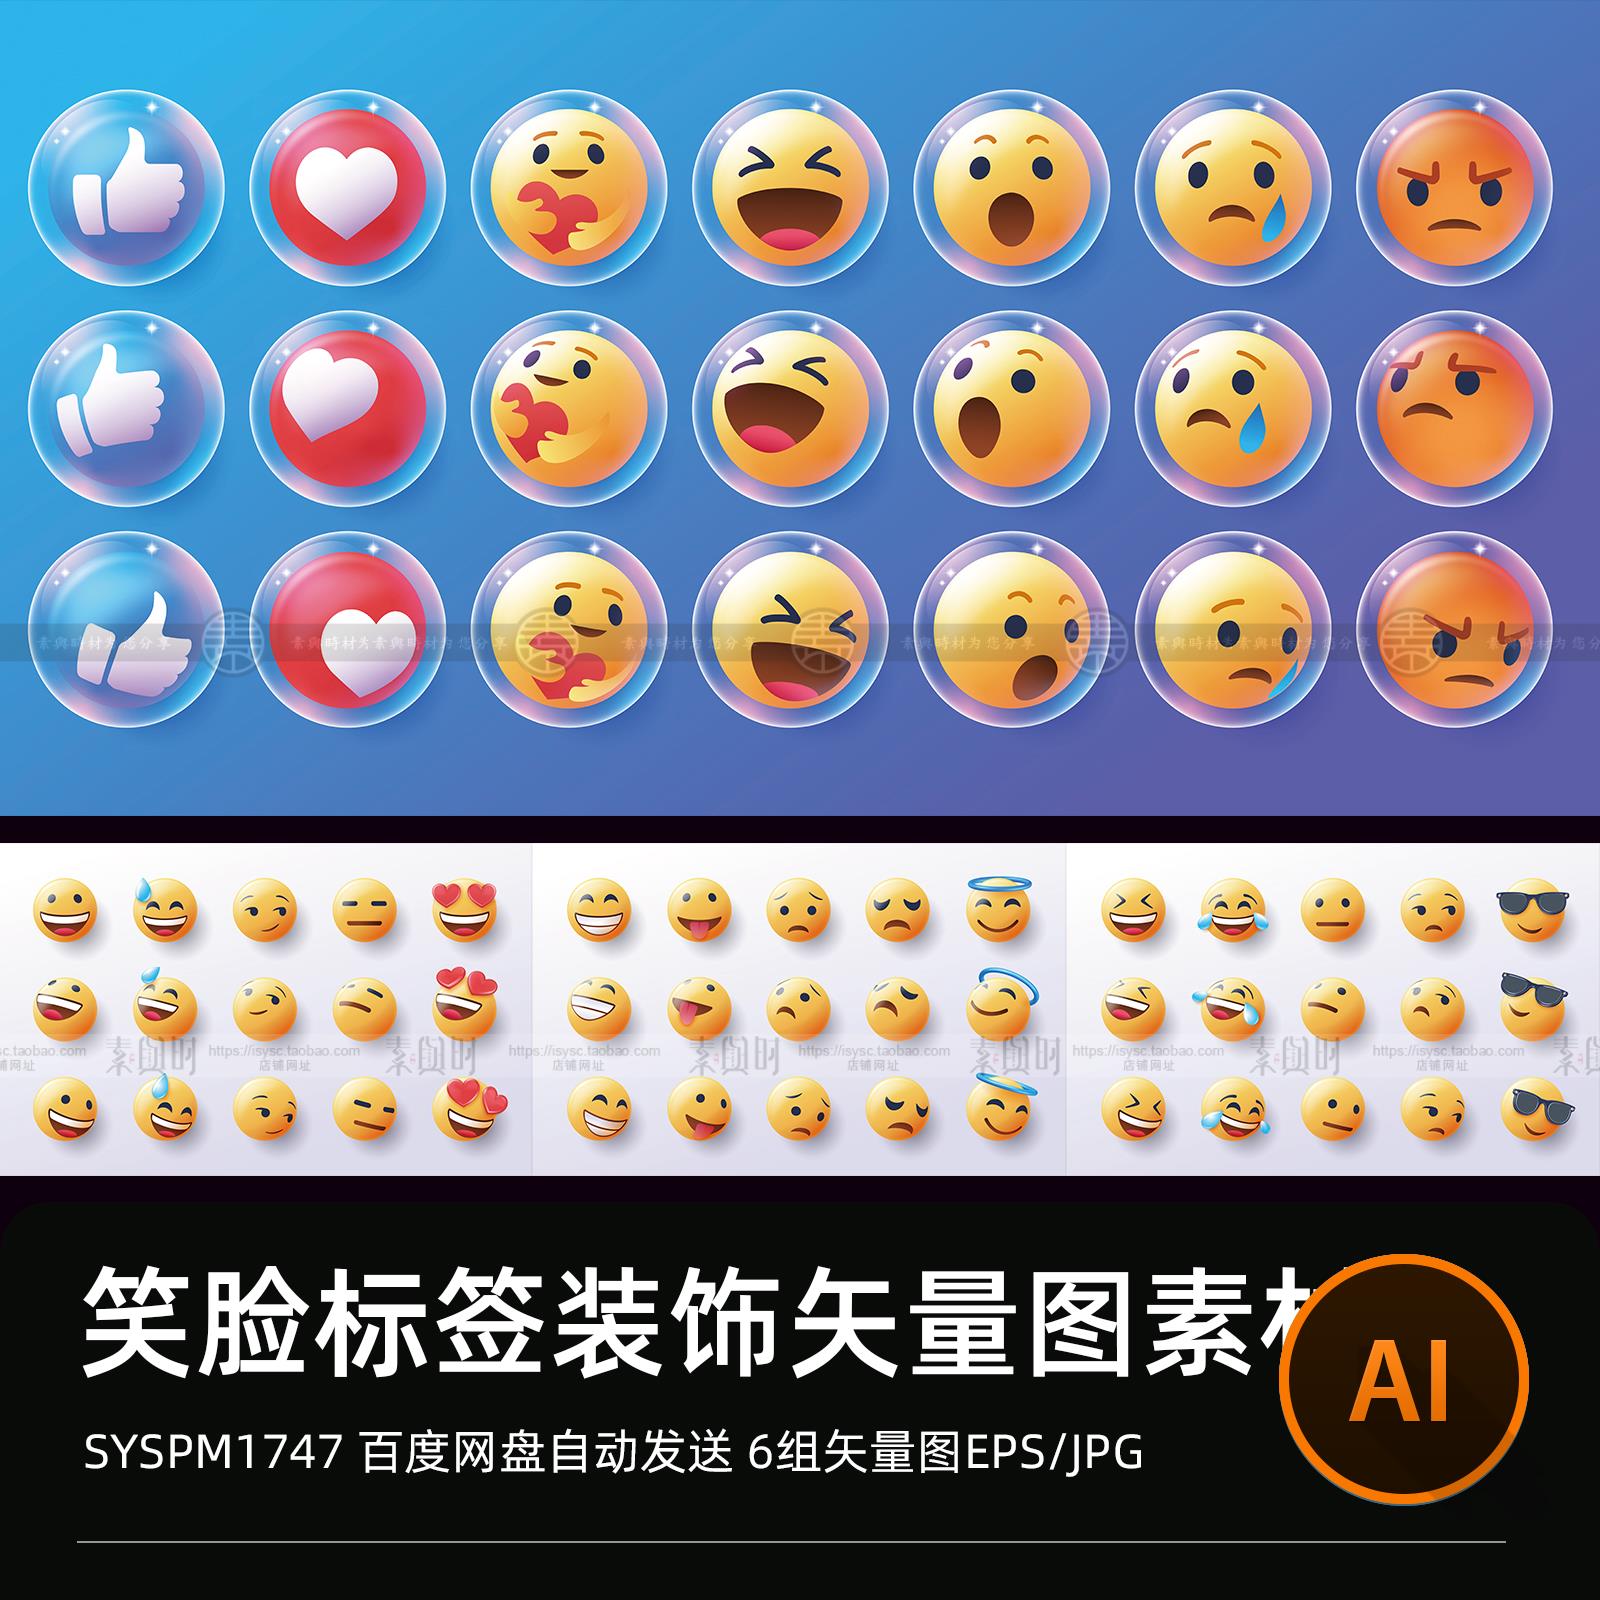 卡通emoji表情包笑脸五官手绘图标插画图片AI矢量设计素材图标